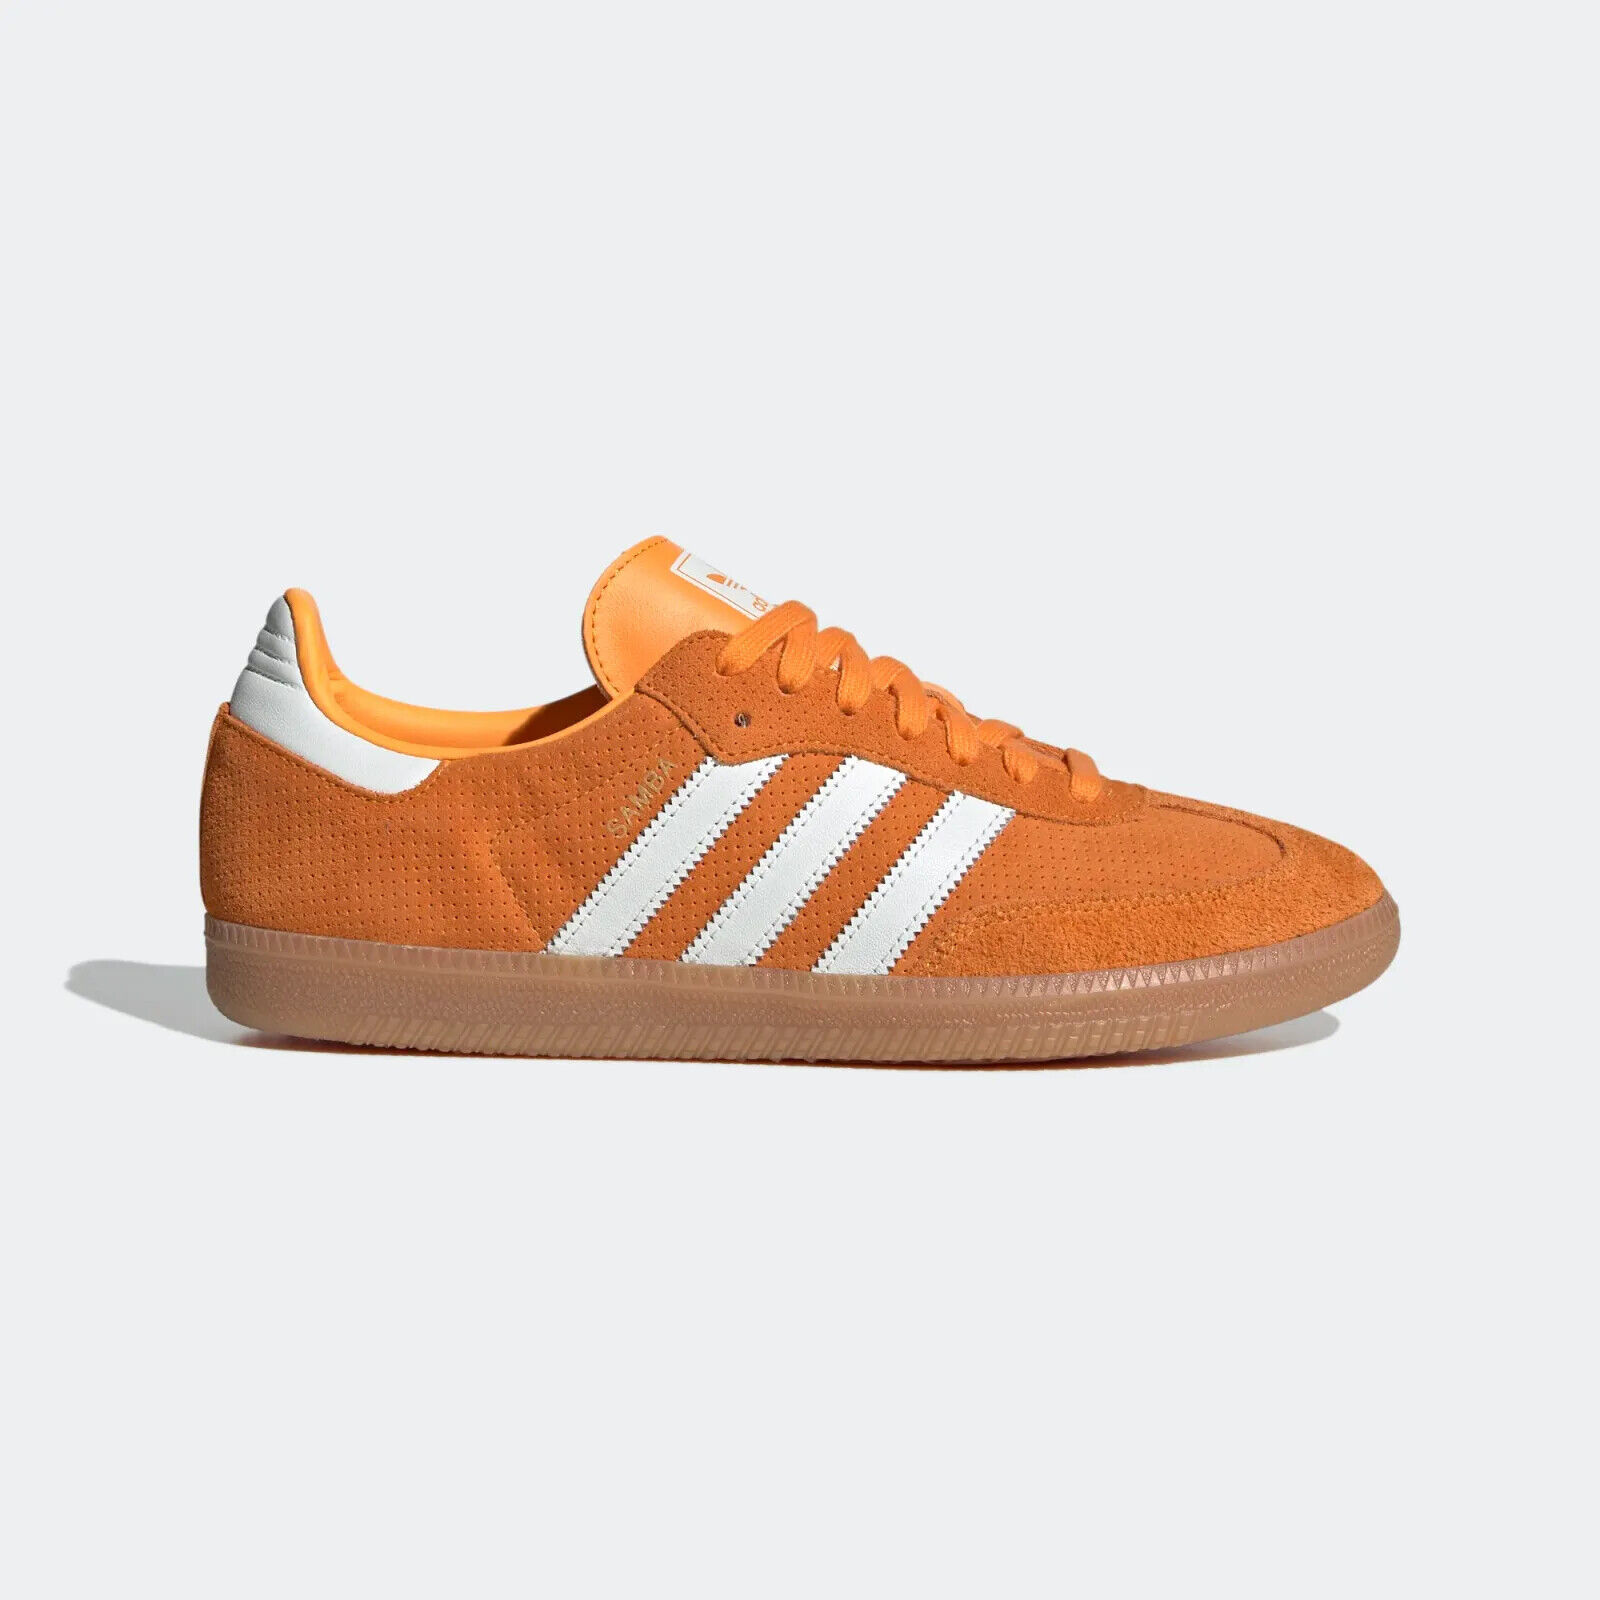 Adidas Originals Men's Samba OG Shoes in Orange Rush / Core White / Gum